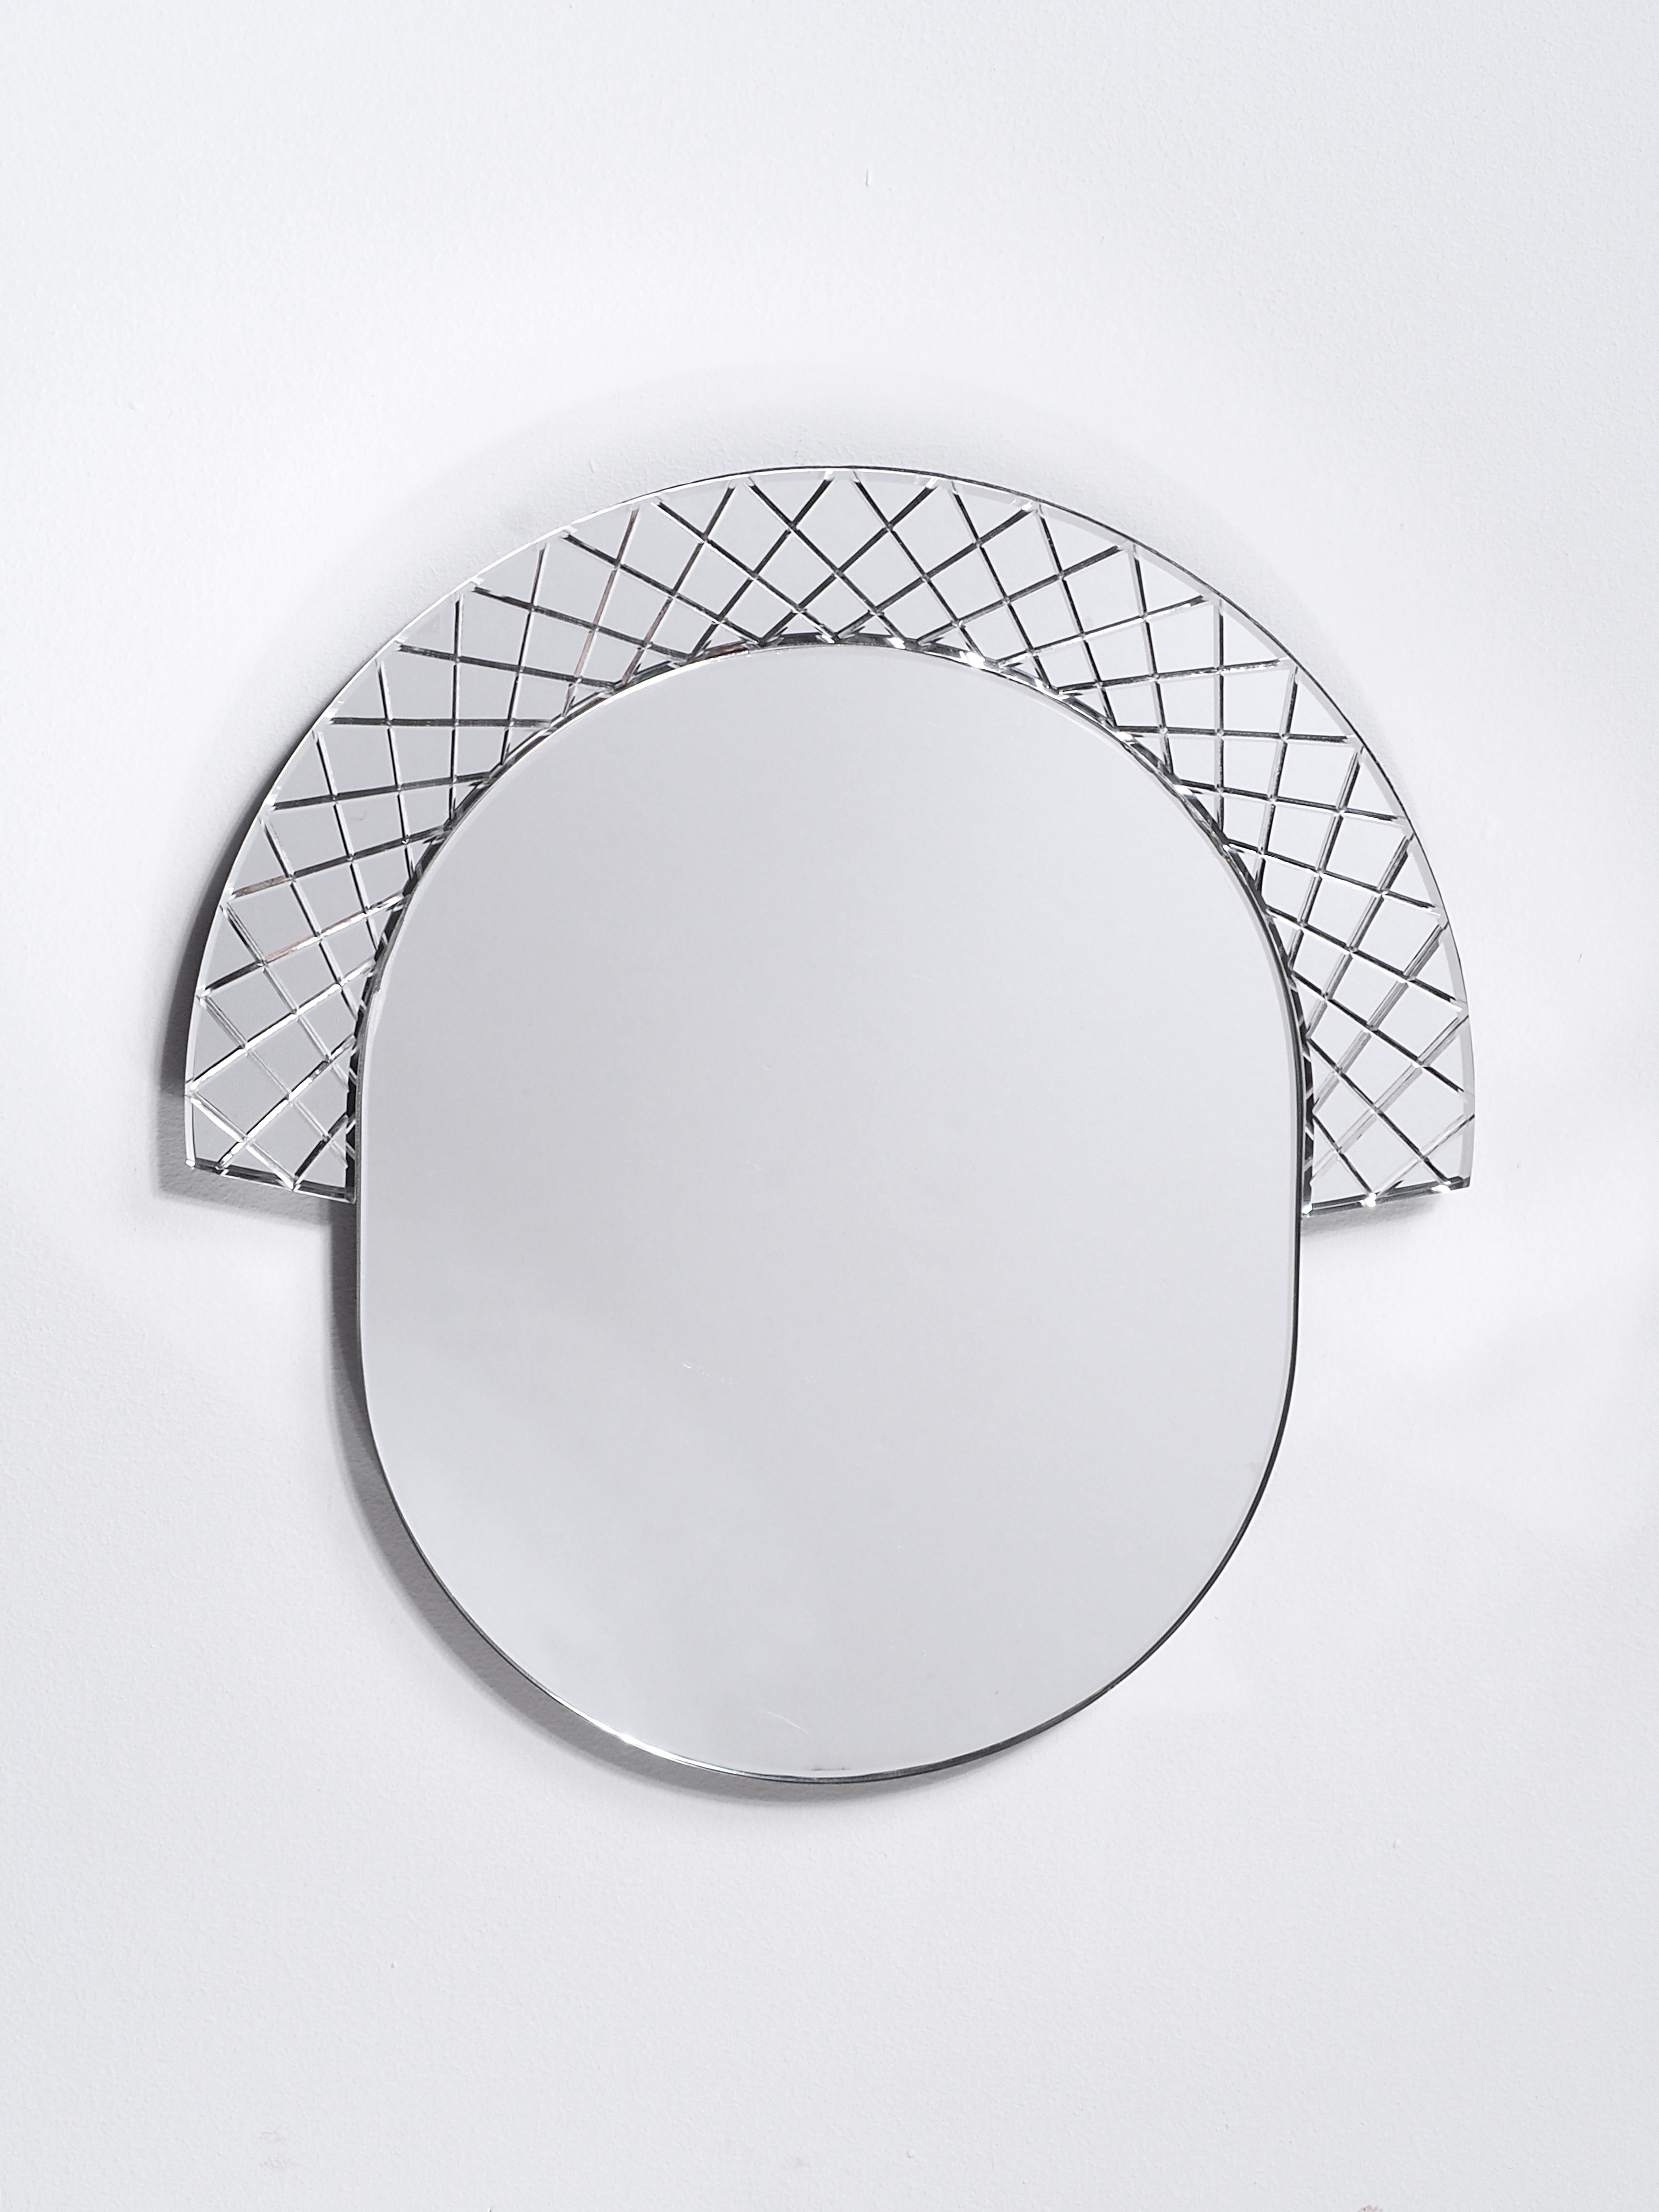 Miroir Scena Elemento Uno de Murano par Nikolai Kotlarczyk
Dimensions : D 3 x L 30 x H 30 cm 
MATERIAL : verre taillé argenté, dos en bois gris foncé.
Également disponible dans d'autres tailles et motifs. Veuillez nous contacter pour plus